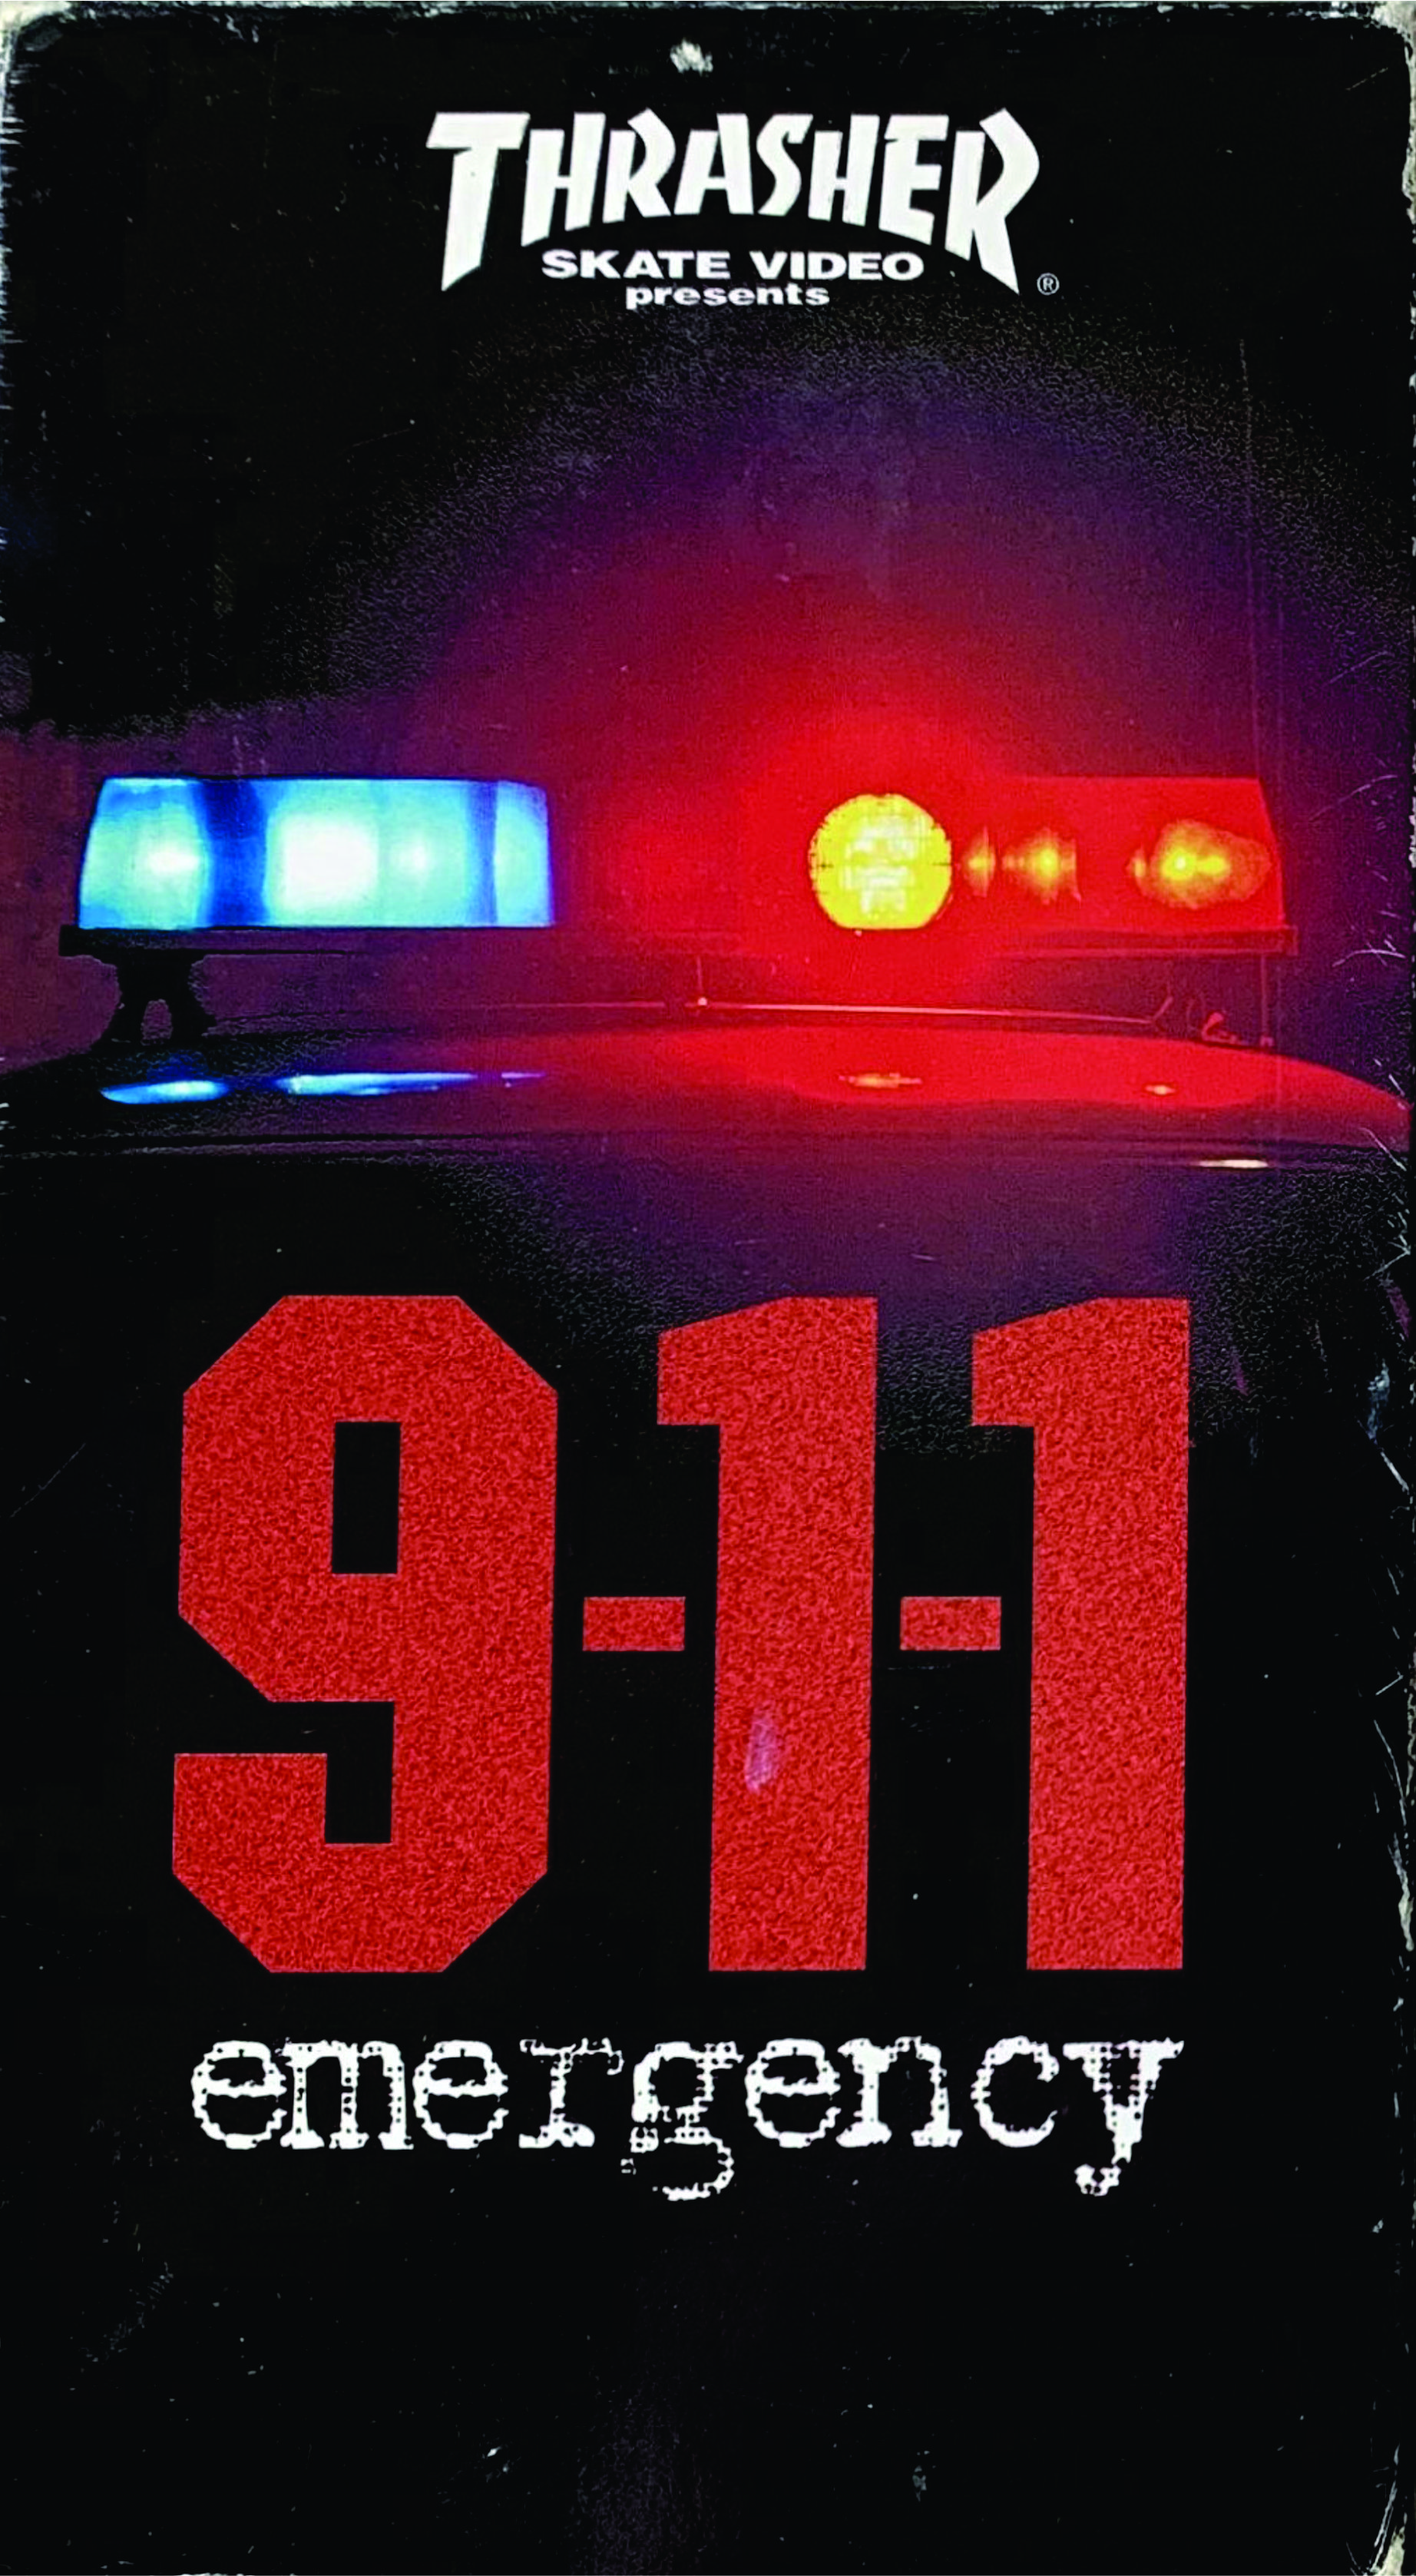 Thrasher - 911 Emergency cover art